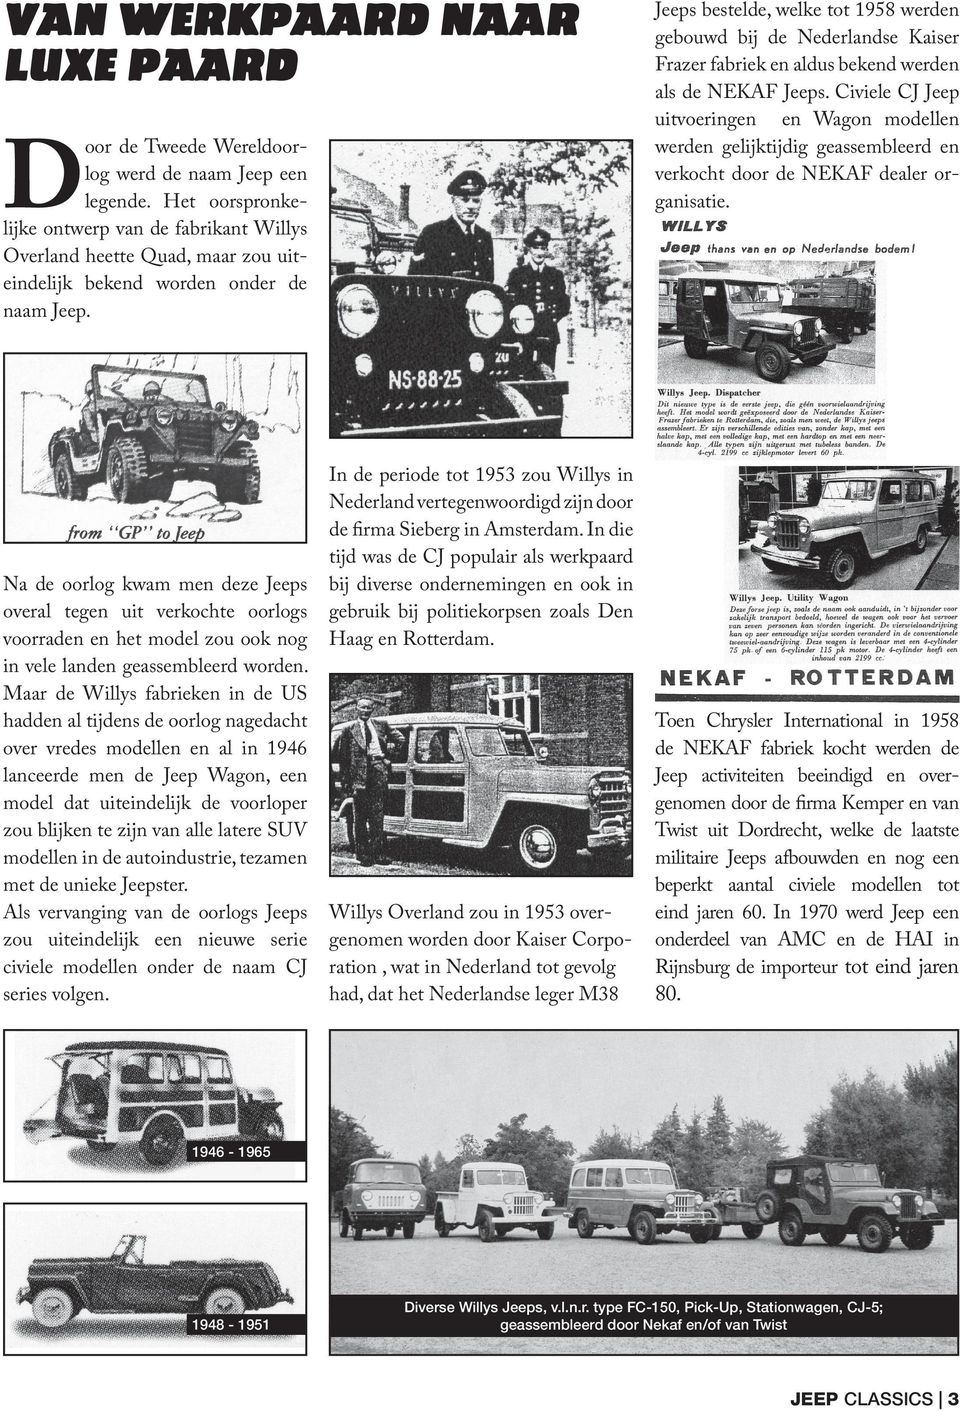 Na de oorlog kwam men deze Jeeps overal tegen uit verkochte oorlogs voorraden en het model zou ook nog in vele landen geassembleerd worden.